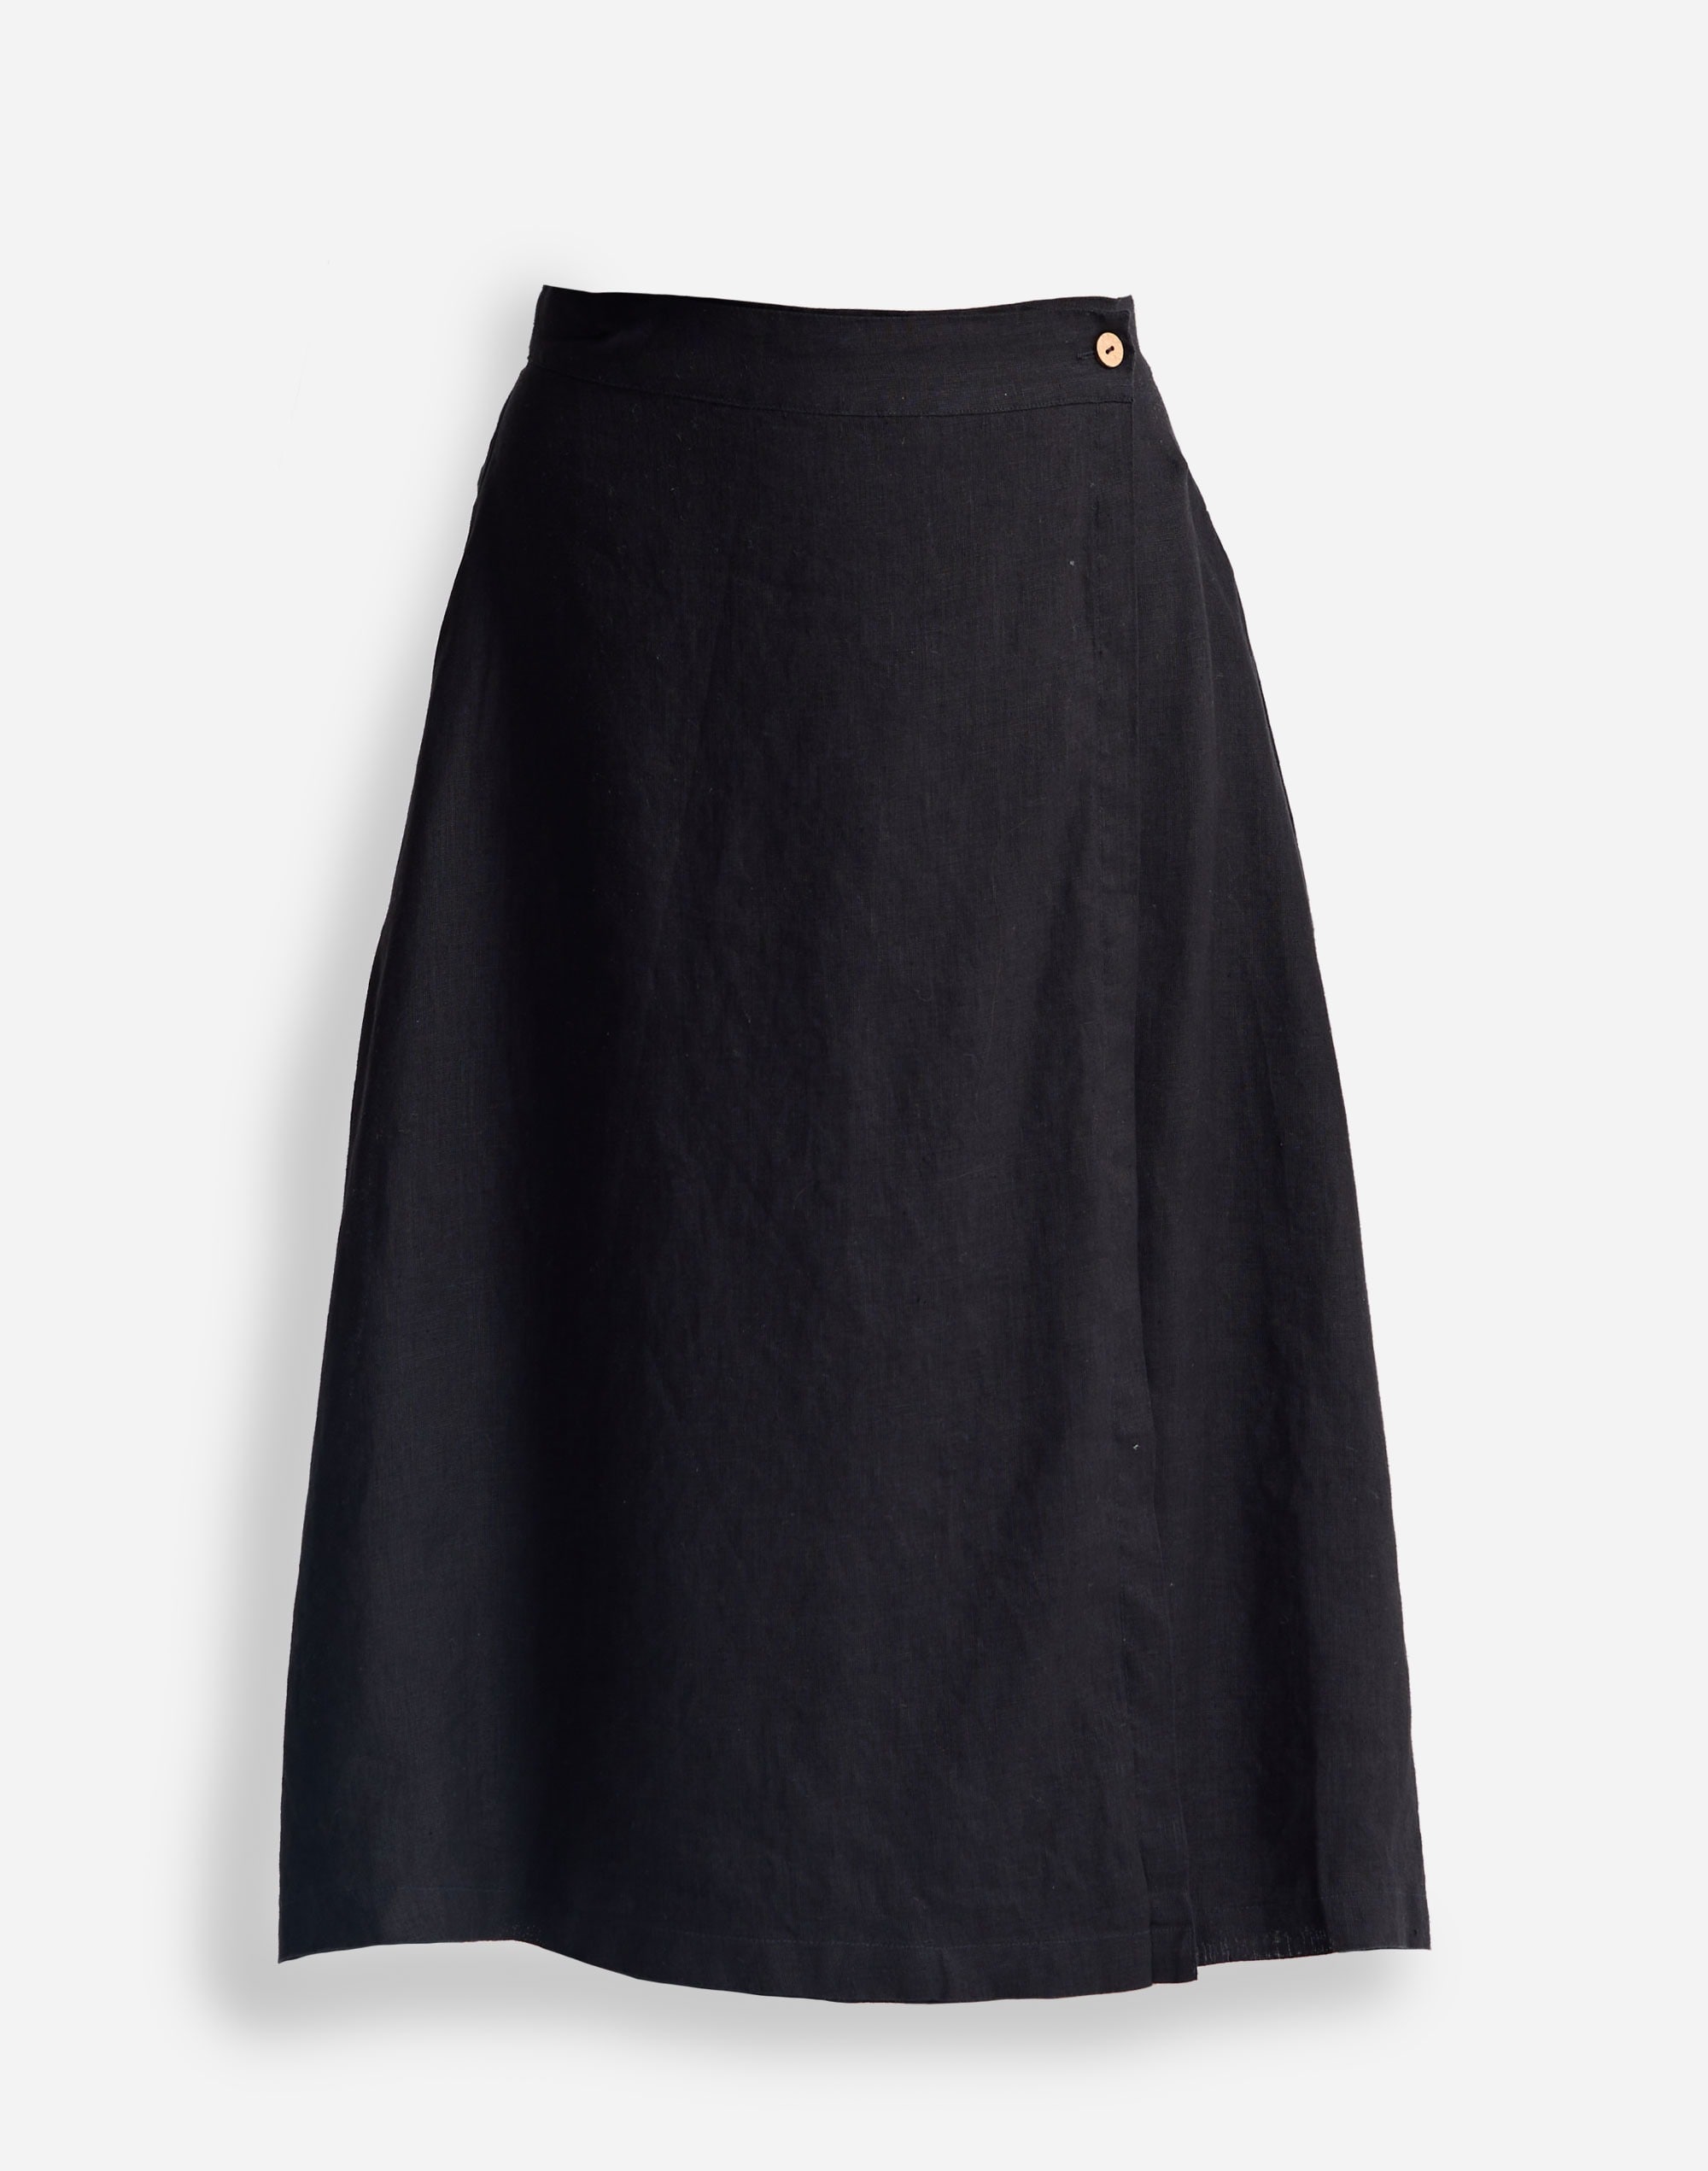 Reistor® Overlap Midi Skirt 100% Black Hemp